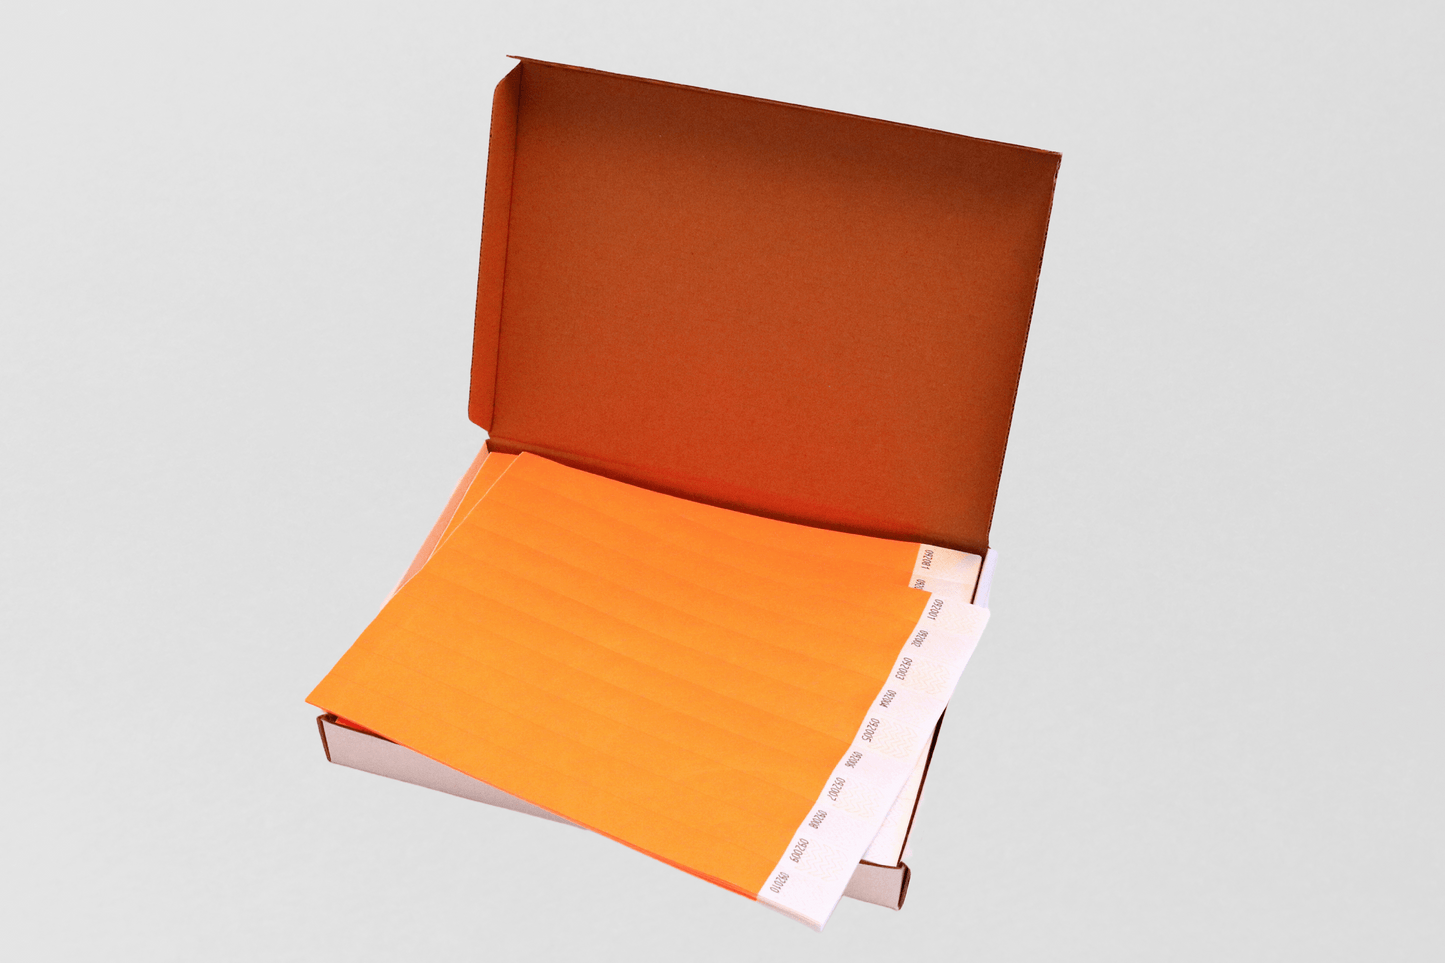 En JM Band NO oransje mappe er åpen i en boks på hvit bakgrunn.